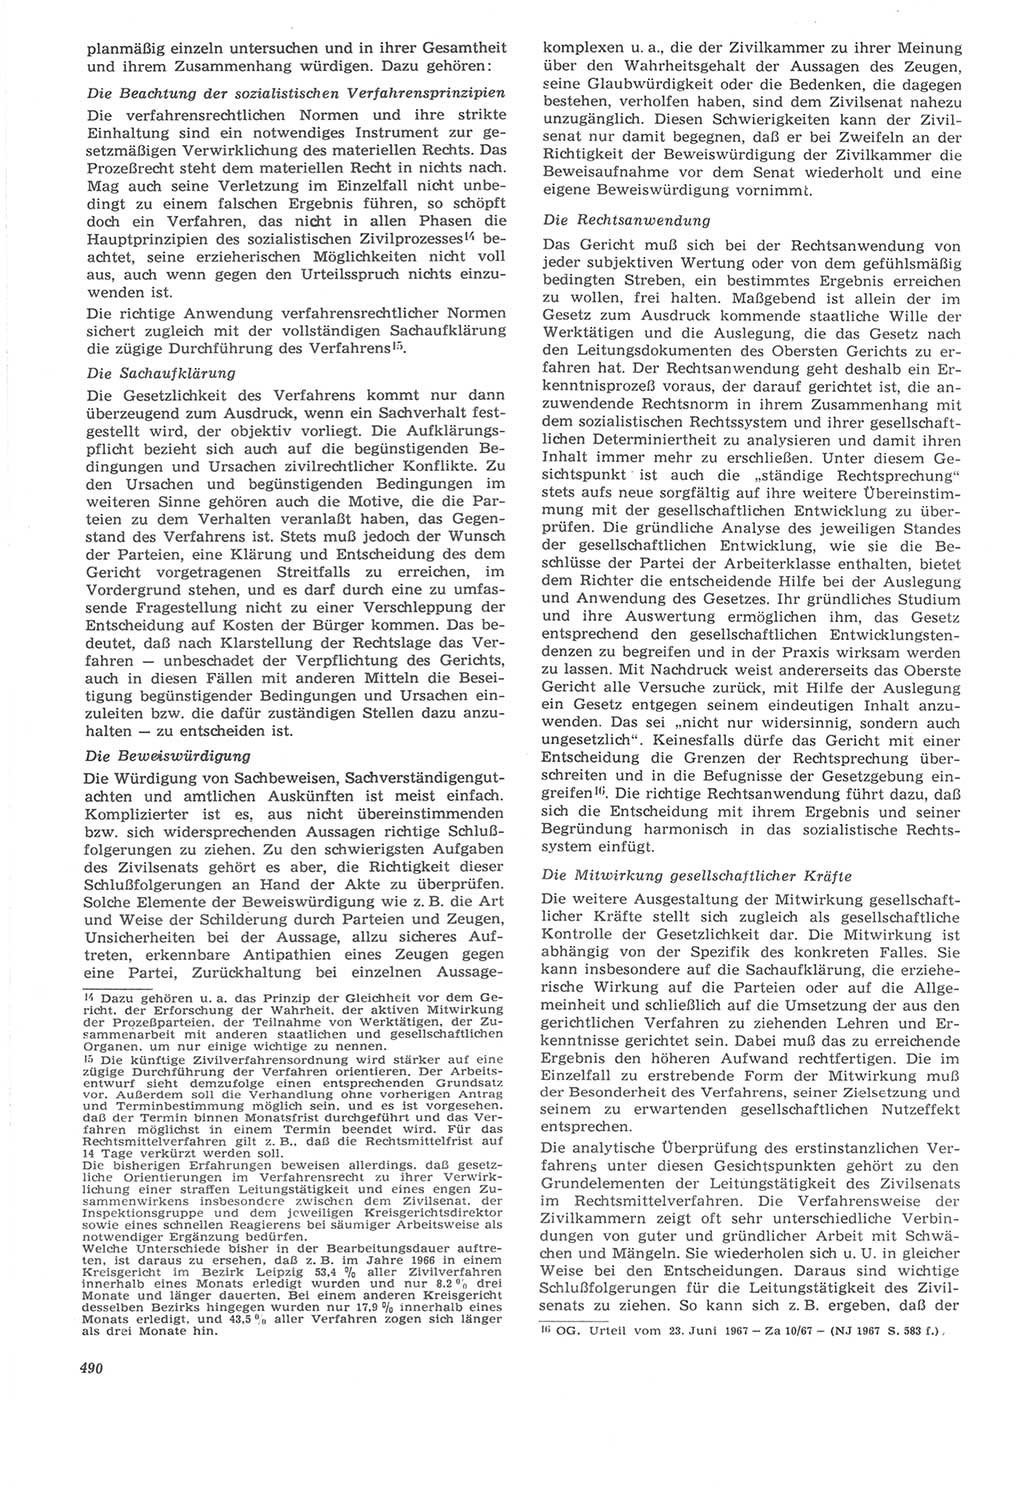 Neue Justiz (NJ), Zeitschrift für Recht und Rechtswissenschaft [Deutsche Demokratische Republik (DDR)], 22. Jahrgang 1968, Seite 490 (NJ DDR 1968, S. 490)